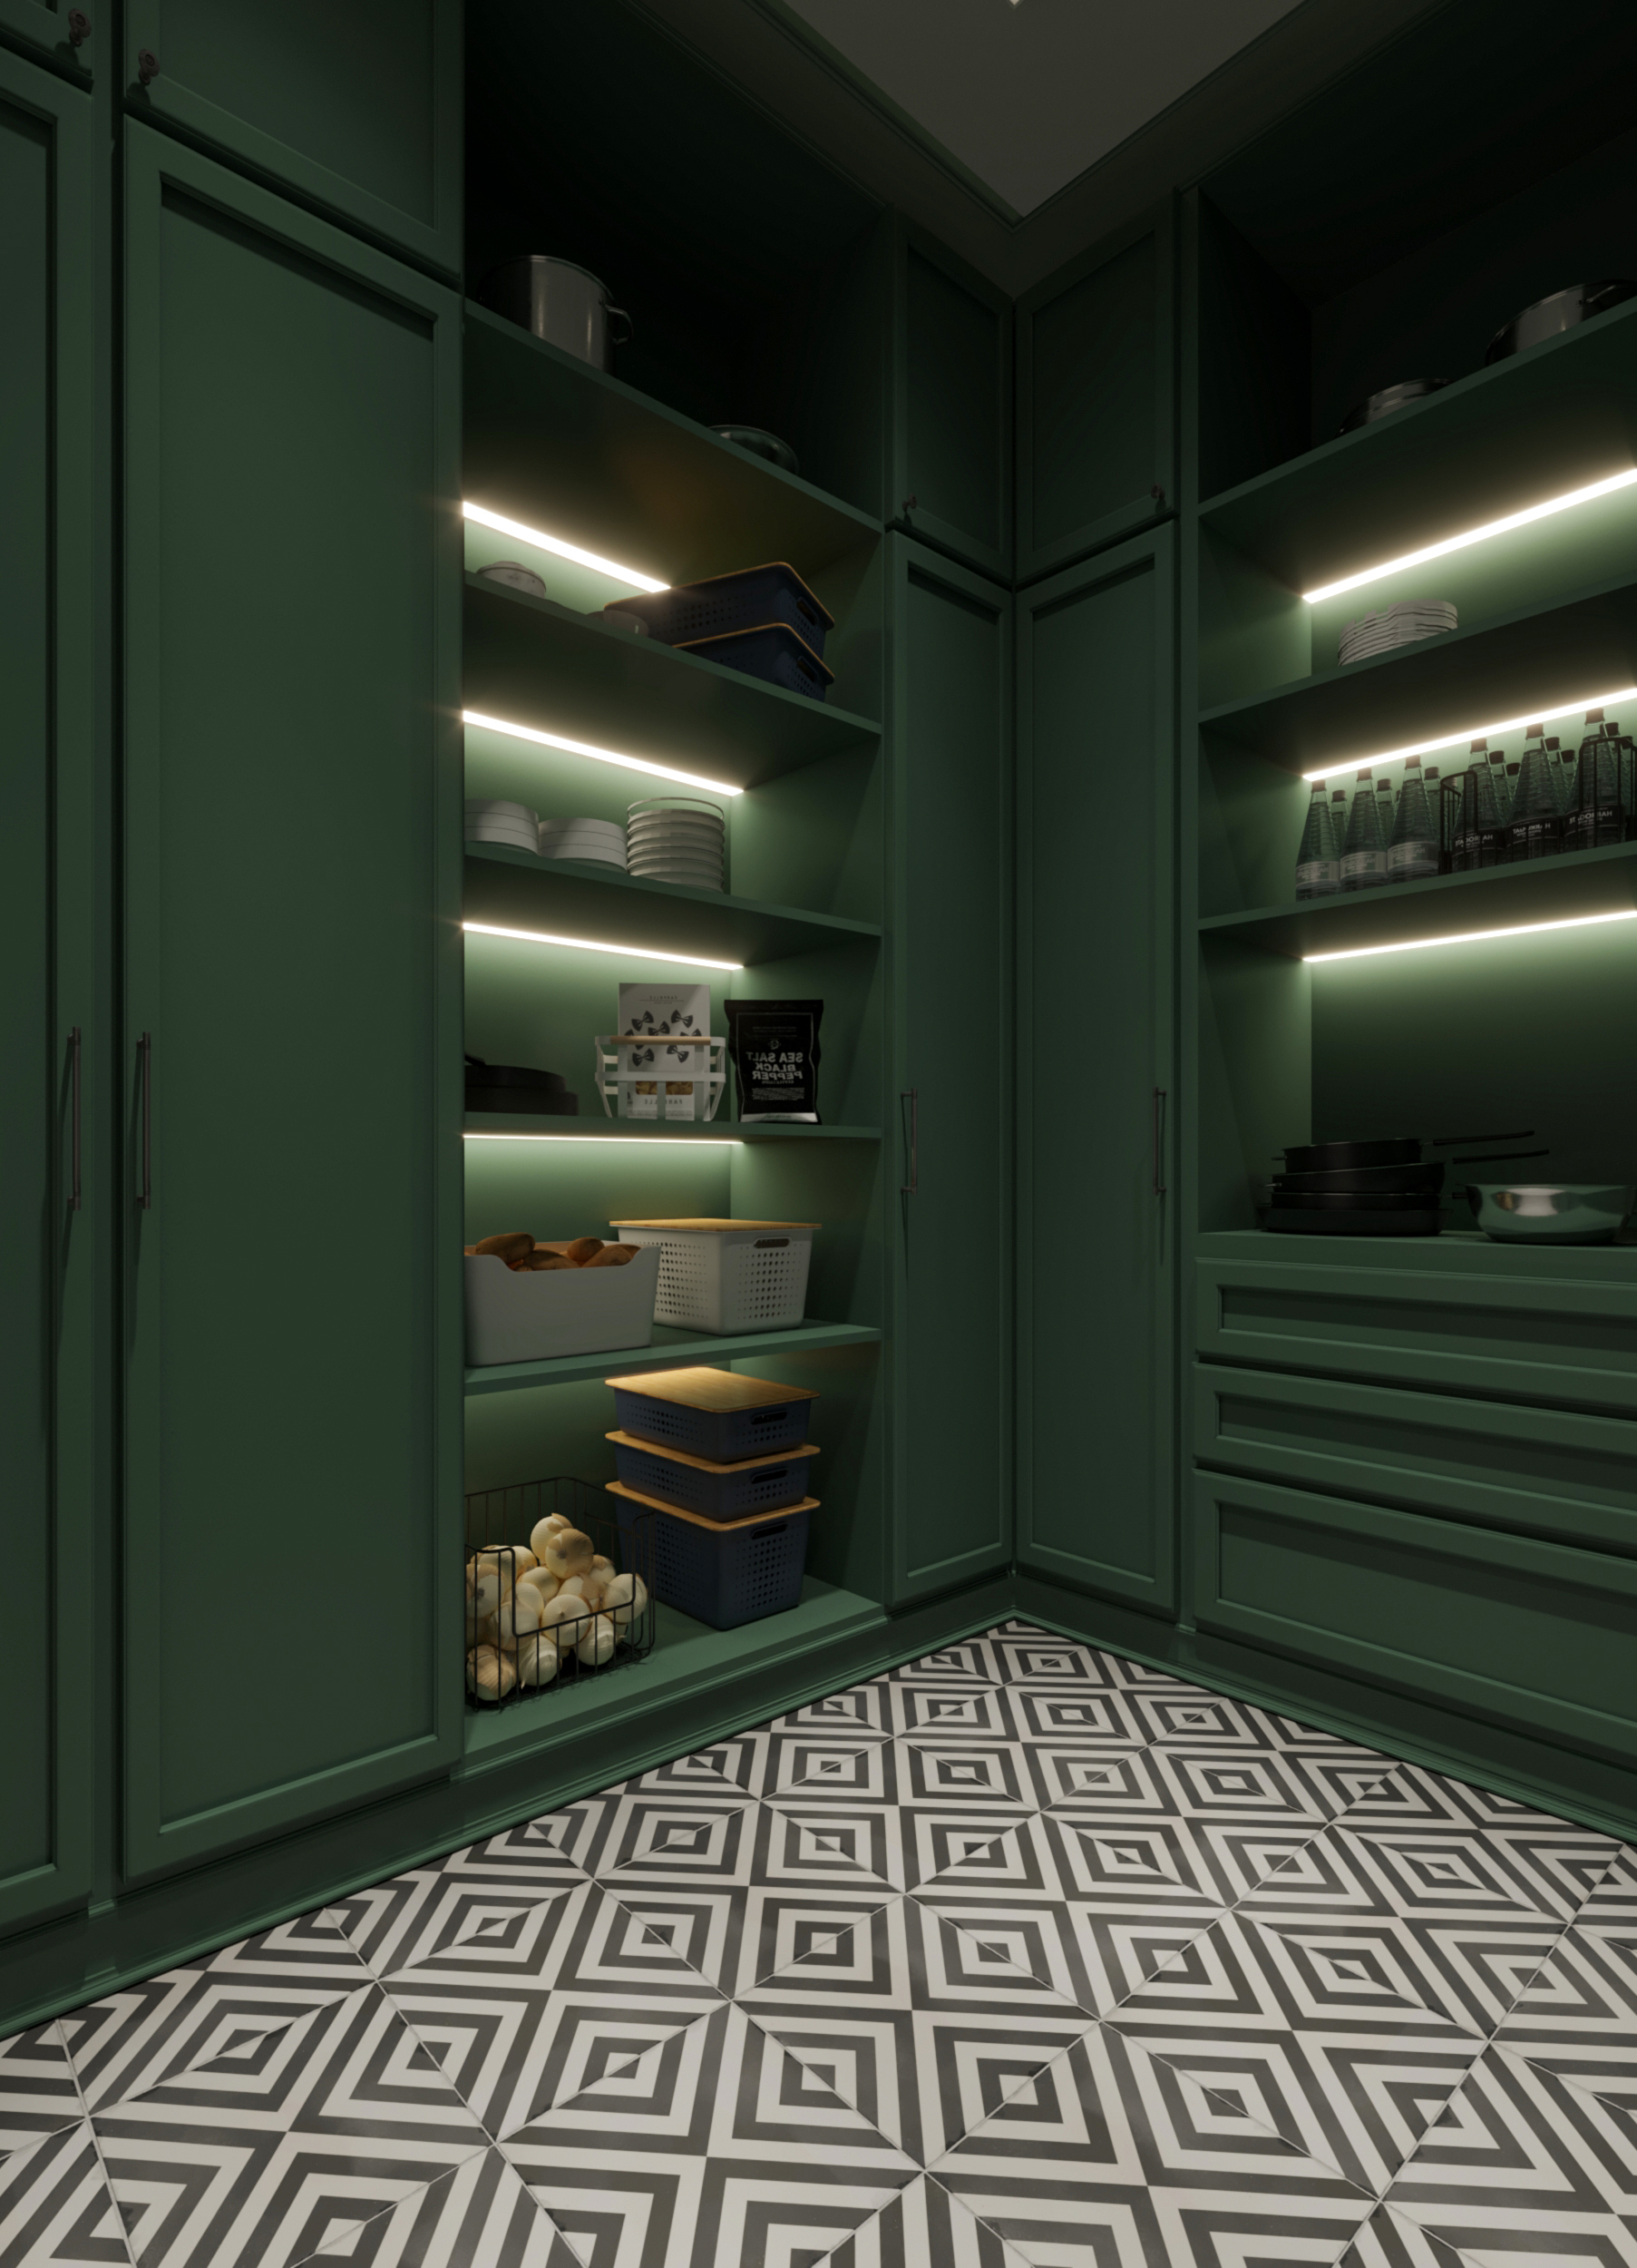 shelves - hidden lights - greeny 